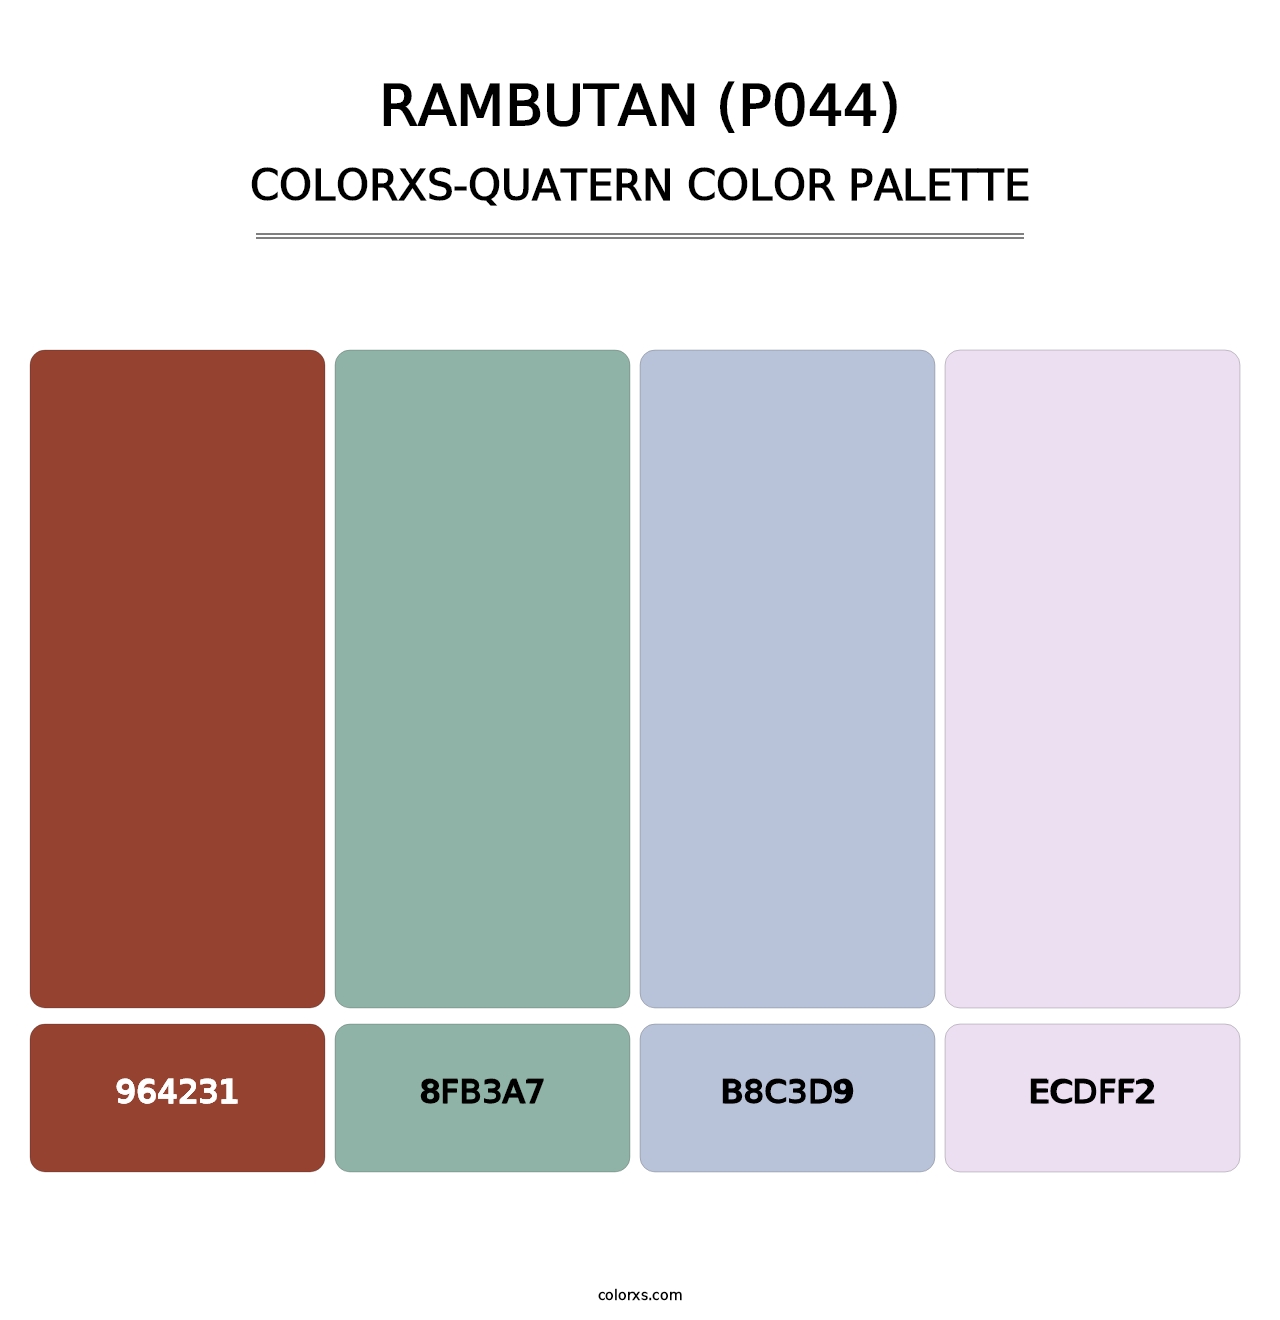 Rambutan (P044) - Colorxs Quatern Palette